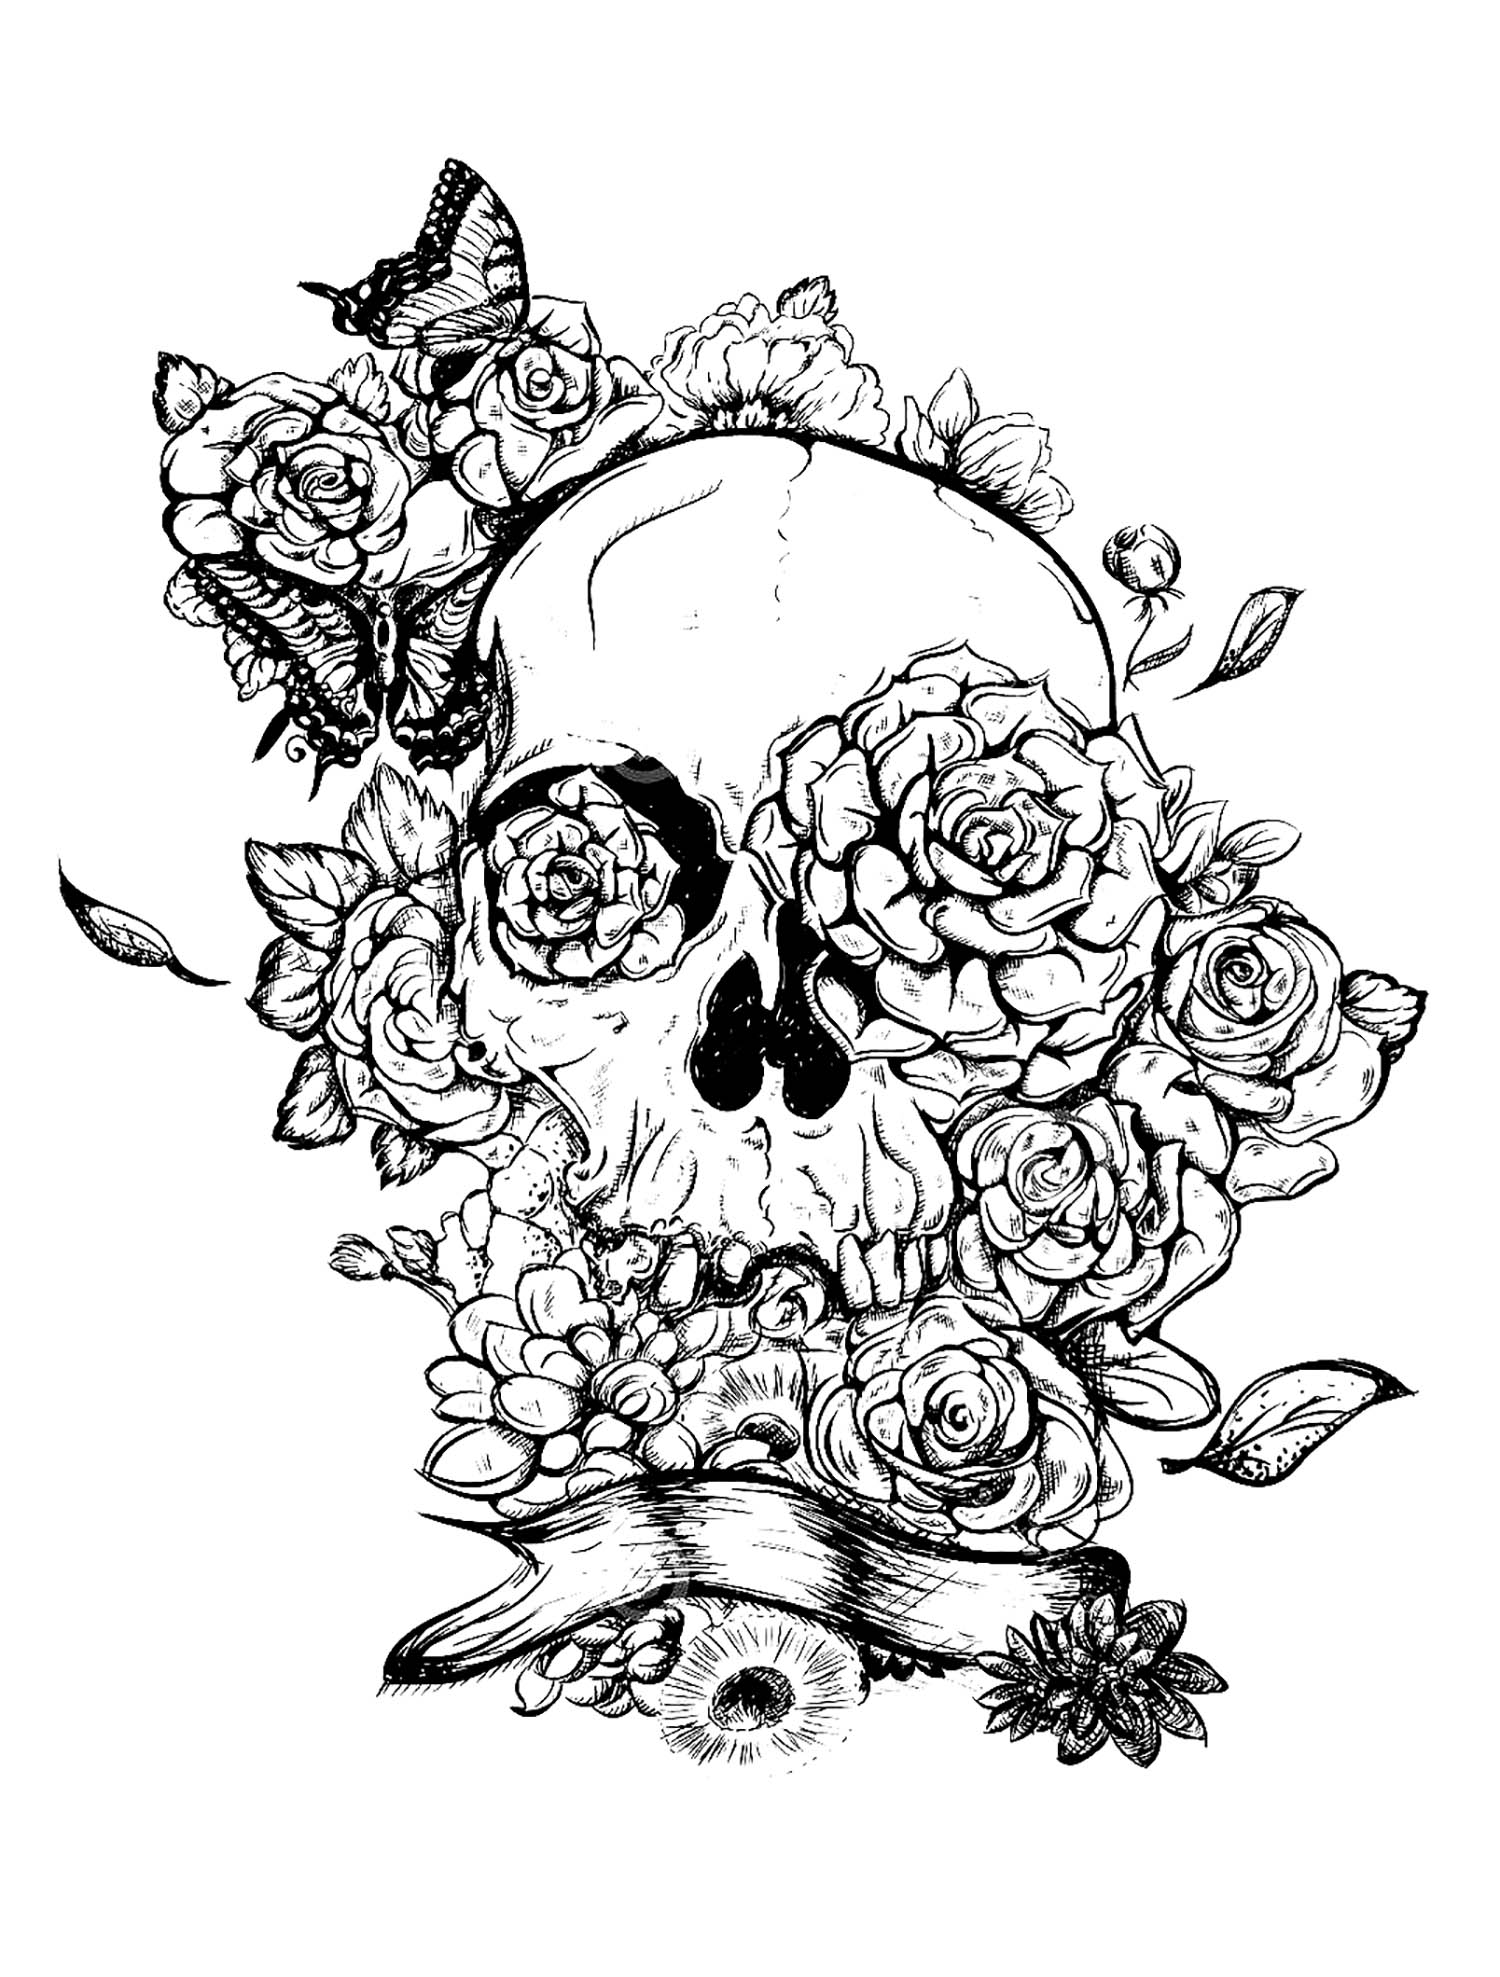 Crâne et roses. Le squelette est dessiné avec des lignes fines et précises, ce qui le rend très détaillé. Les roses qui l'entourent sont également très bien détaillées, à vous de les colorier de couleurs vives et intenses.